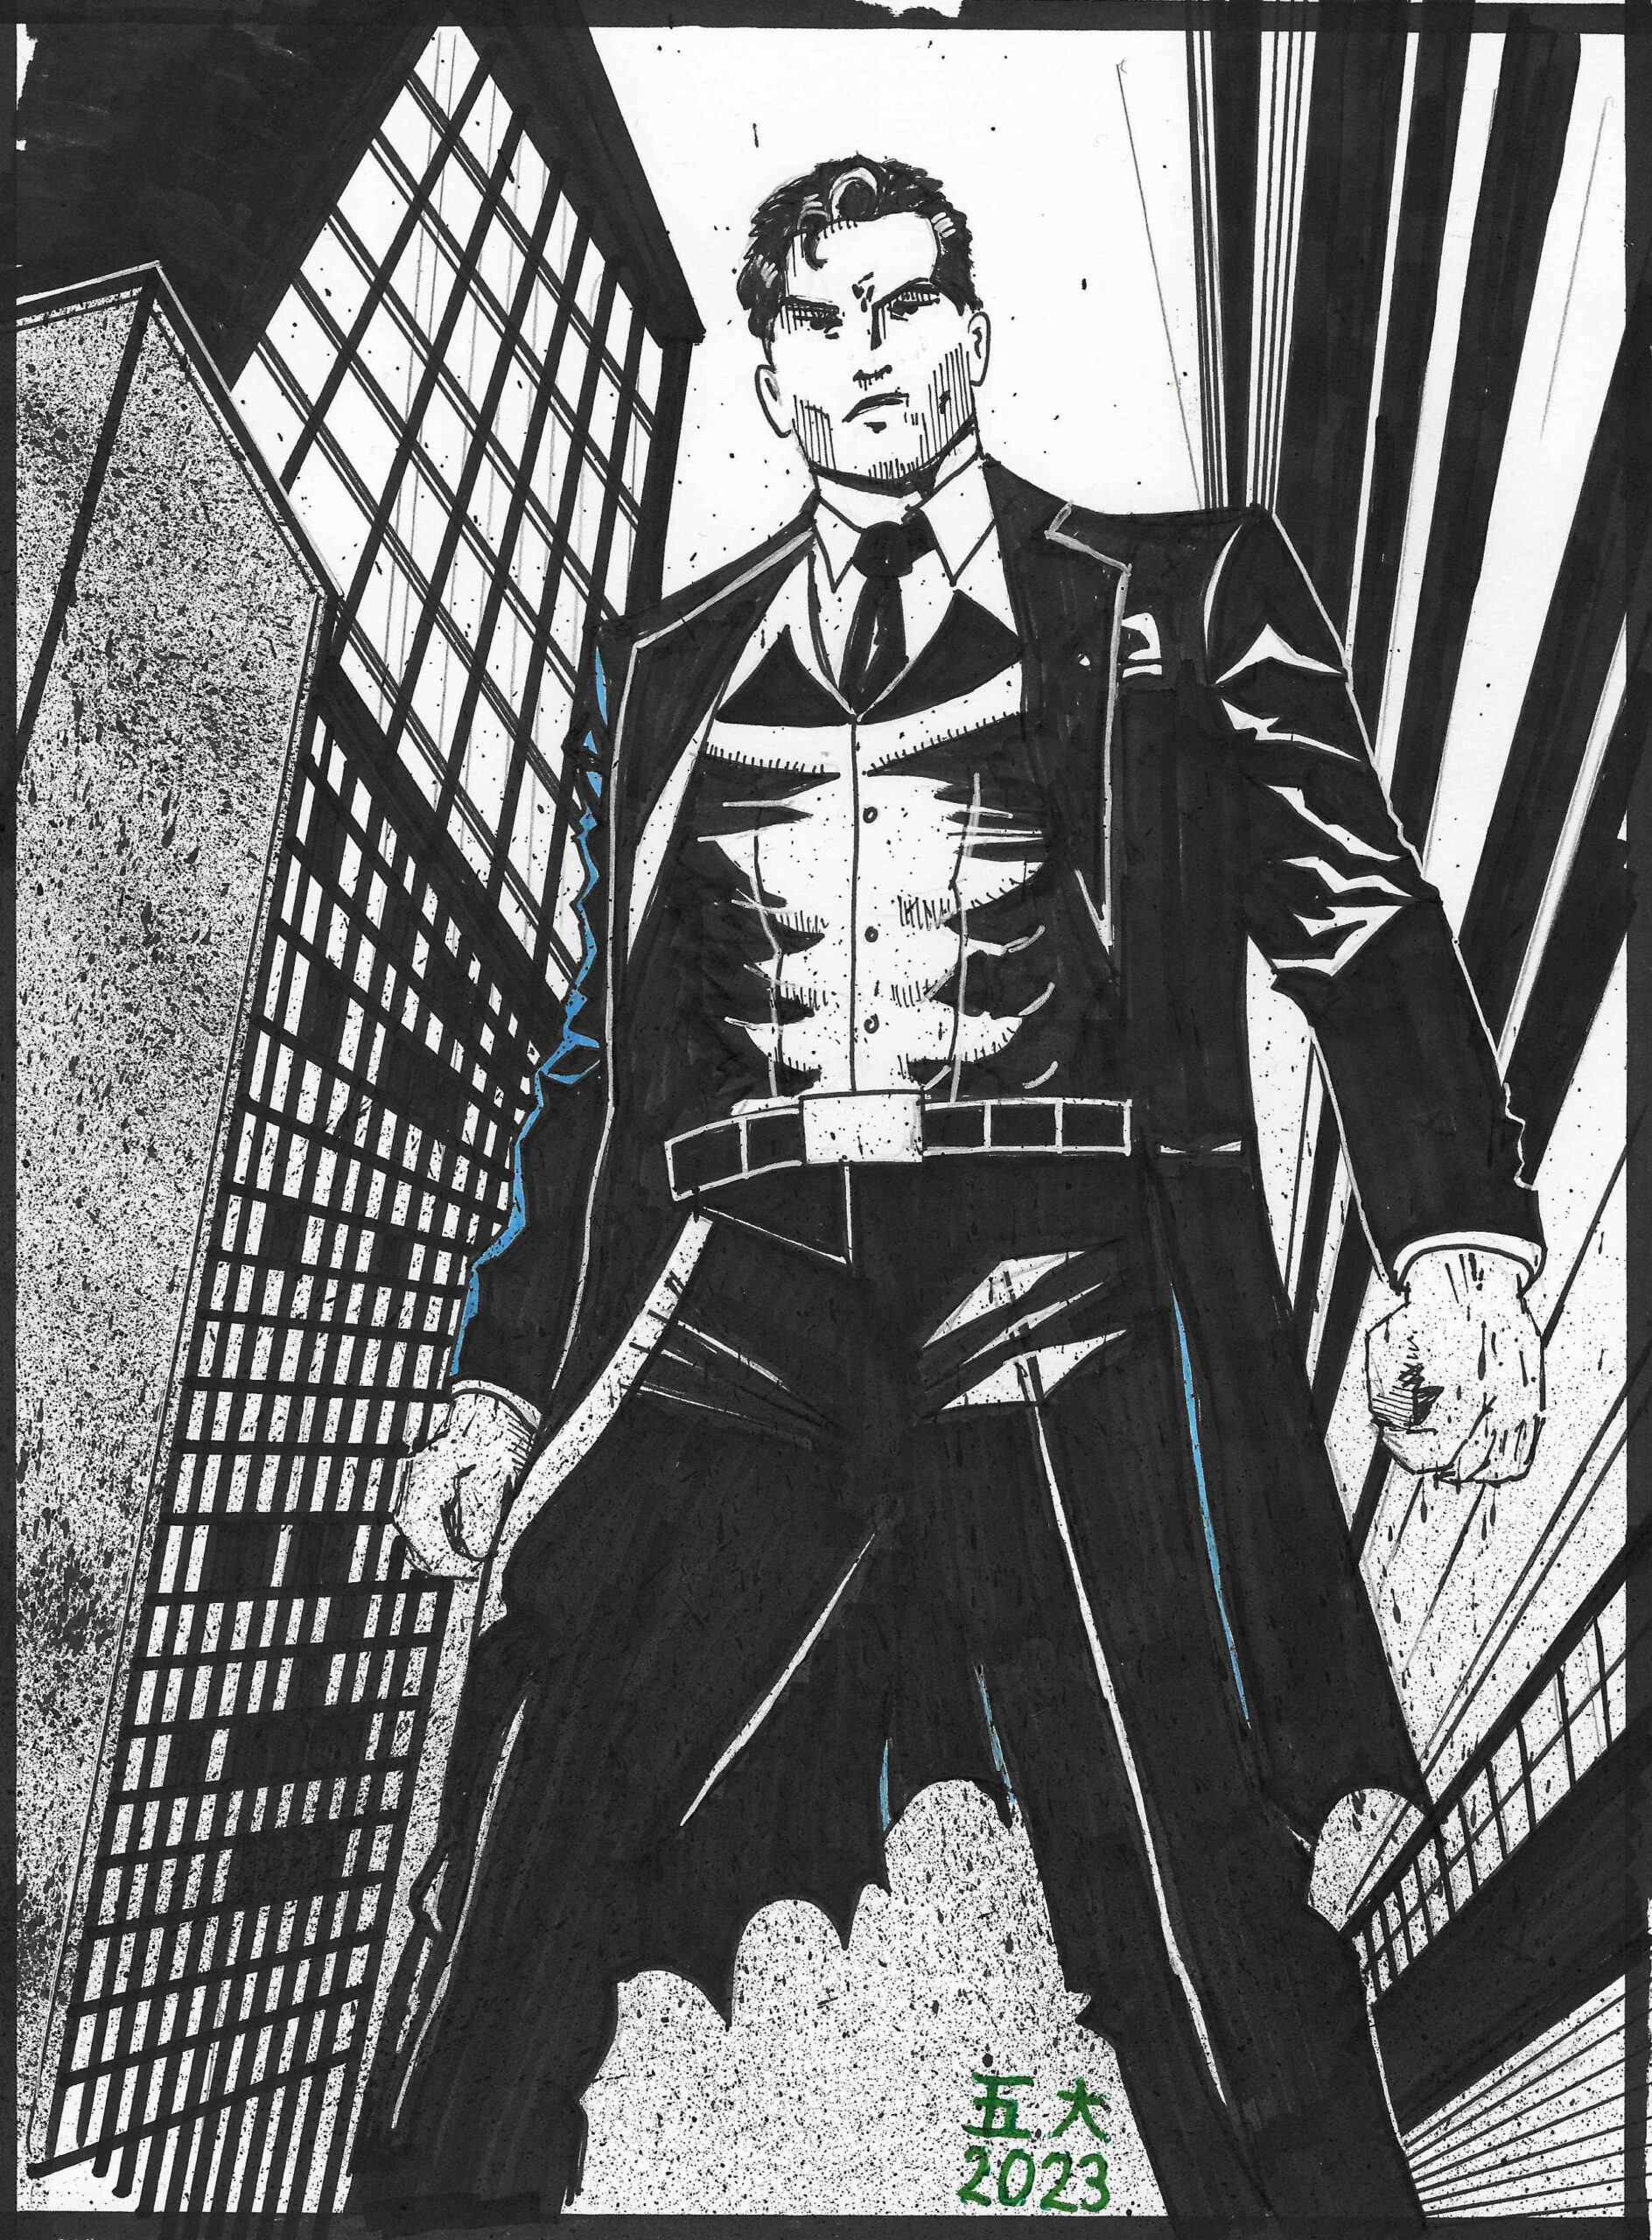 Grafika przedstawia fikcyjnego amerykańskiego multimilionera imieniem Bruce Wayne stojącego na ulicy, otoczonej przez wieżowce. Mężczyzna ma atletyczną budowę i ubrany jest w garnitur, którego niektóre elementy przypominają fragmenty stroju Batmana.